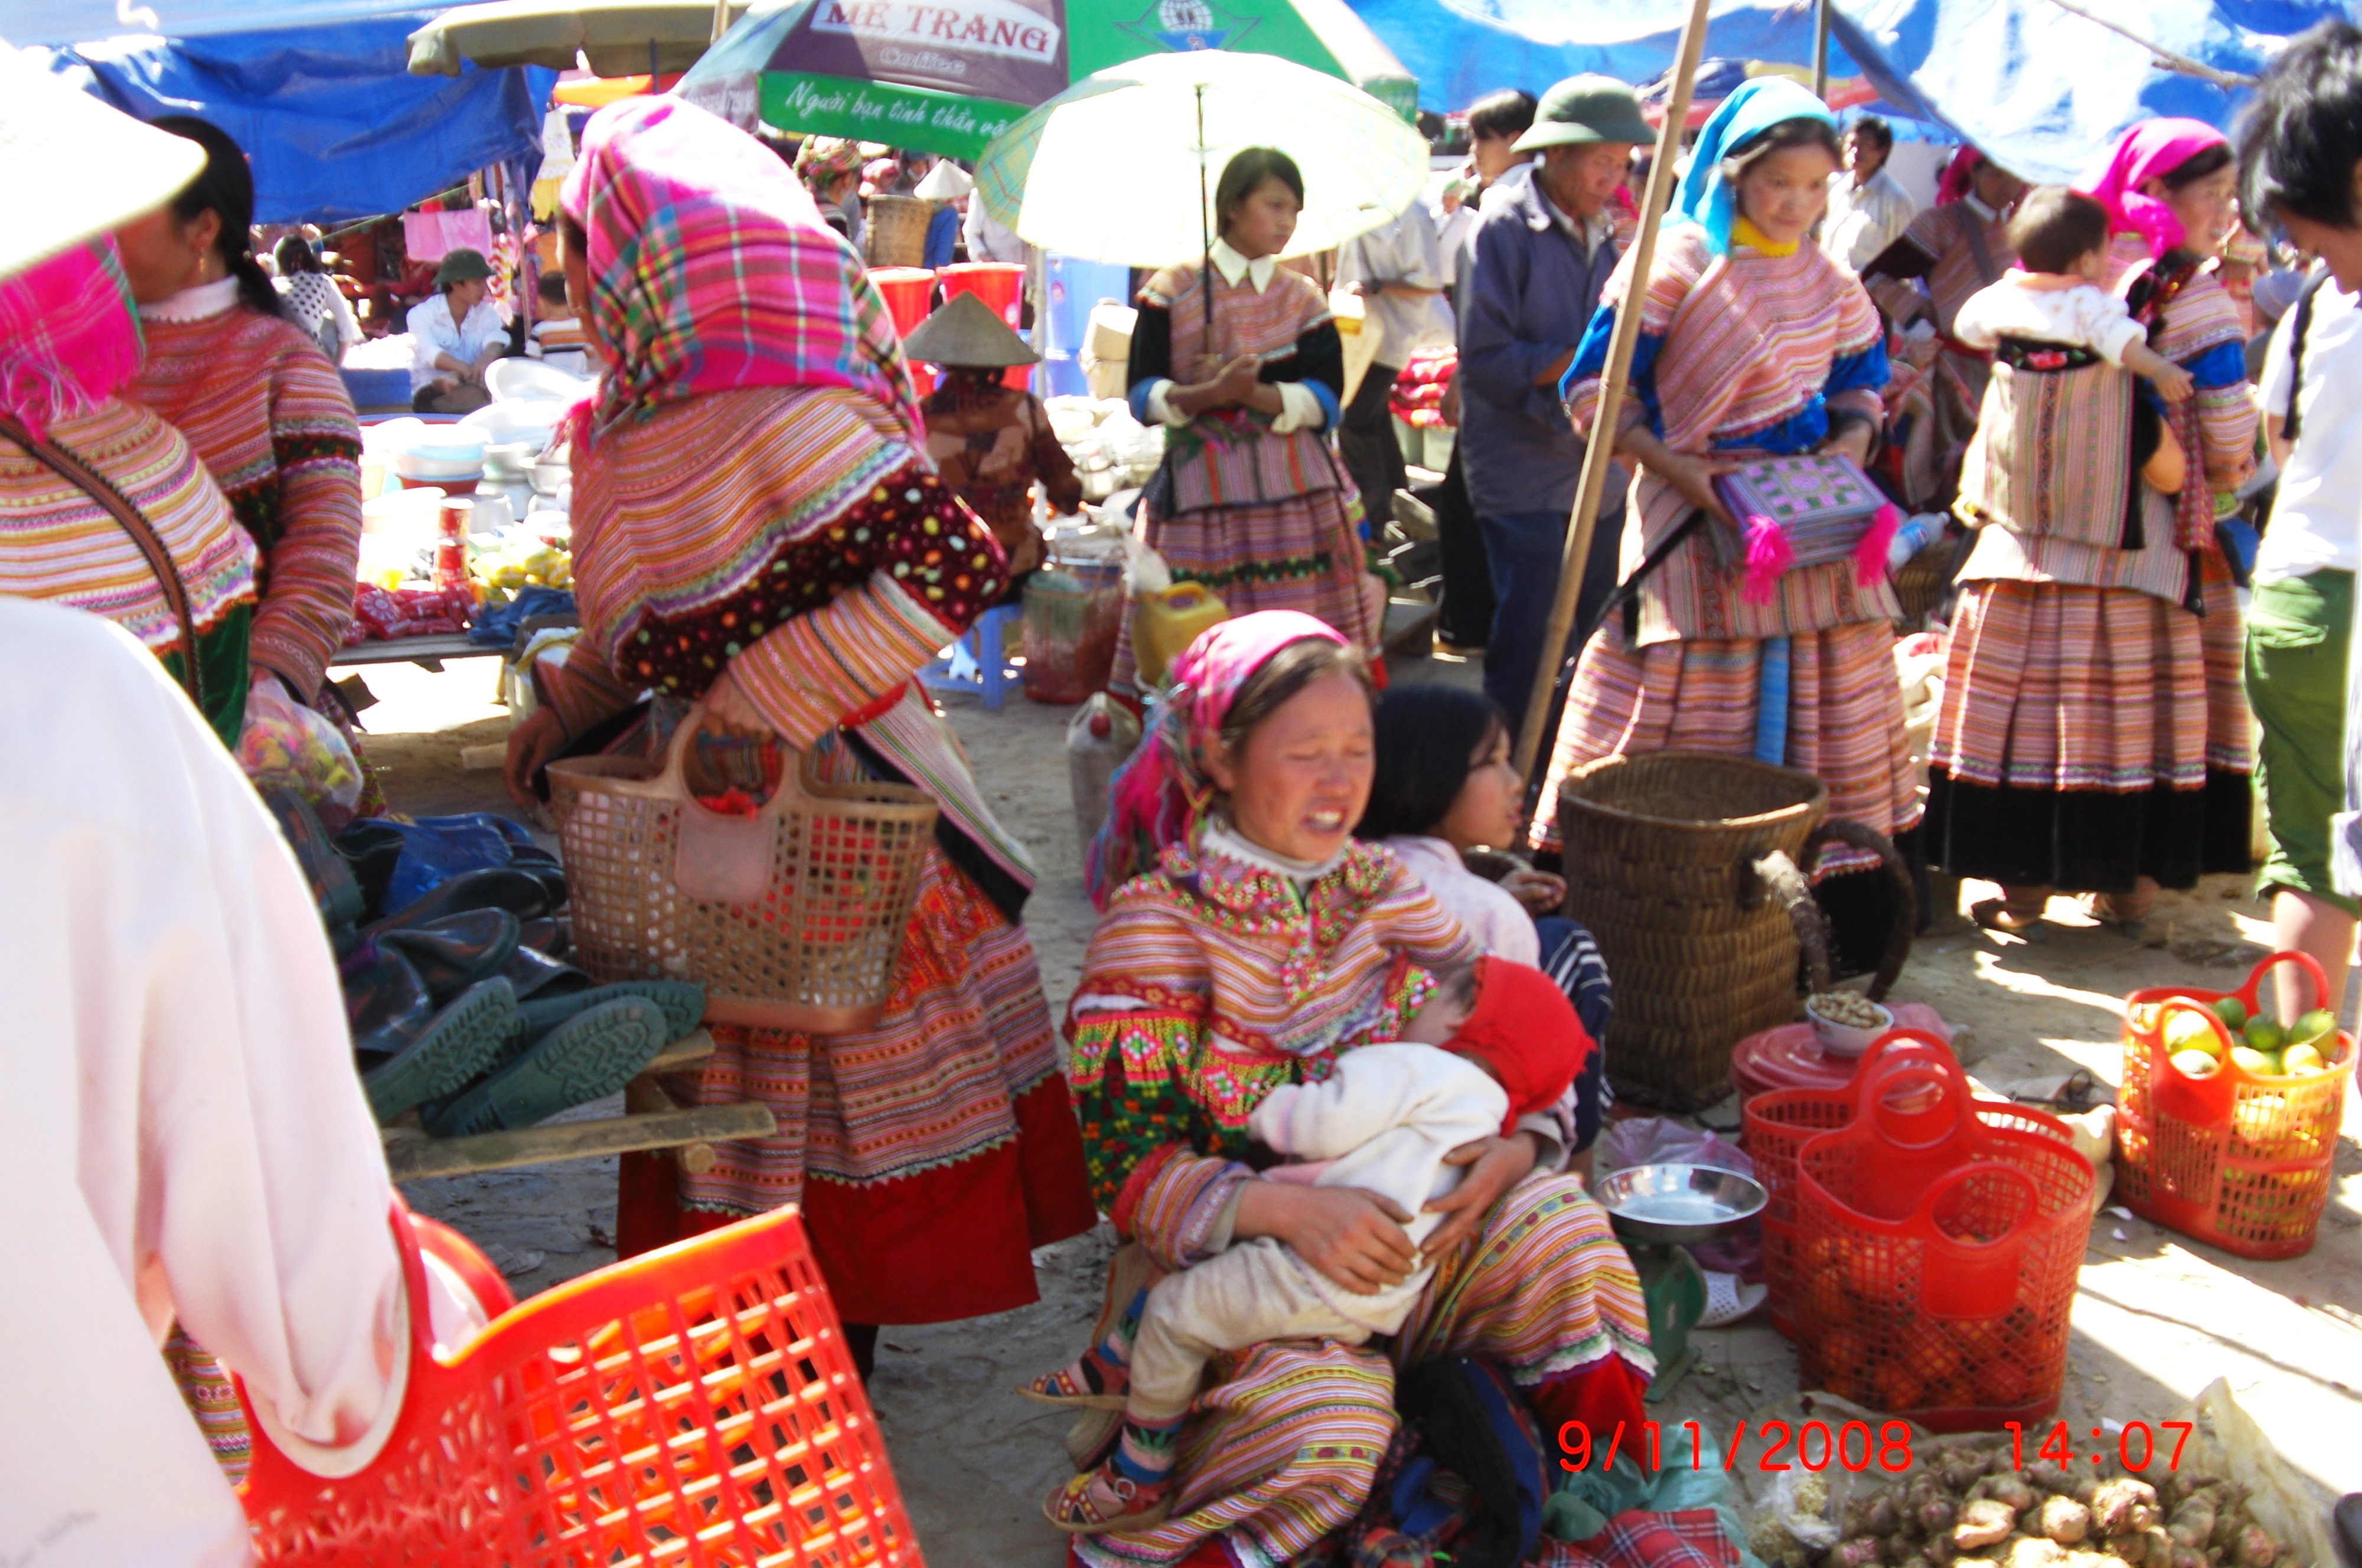 マルチカバー ベトナム サパ エスニックインテリア 少数民族 赤ザオ族